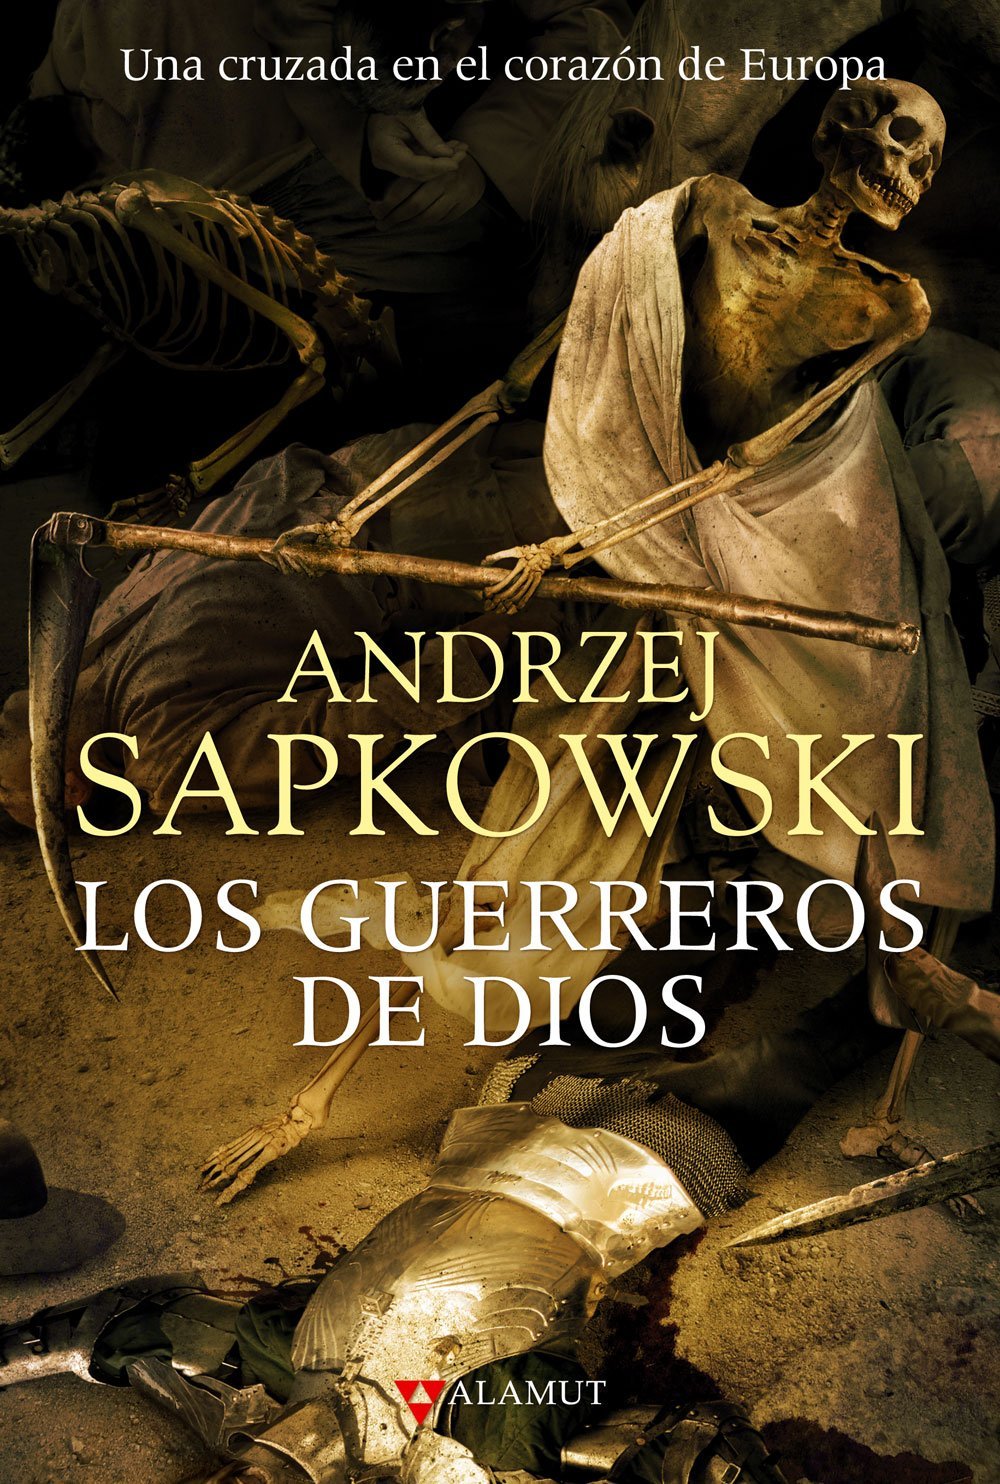 Andrzej Sapkowski, Francisco Otero Macías: Los guerreros de Dios (Paperback, Español language, 2012, Alamut)